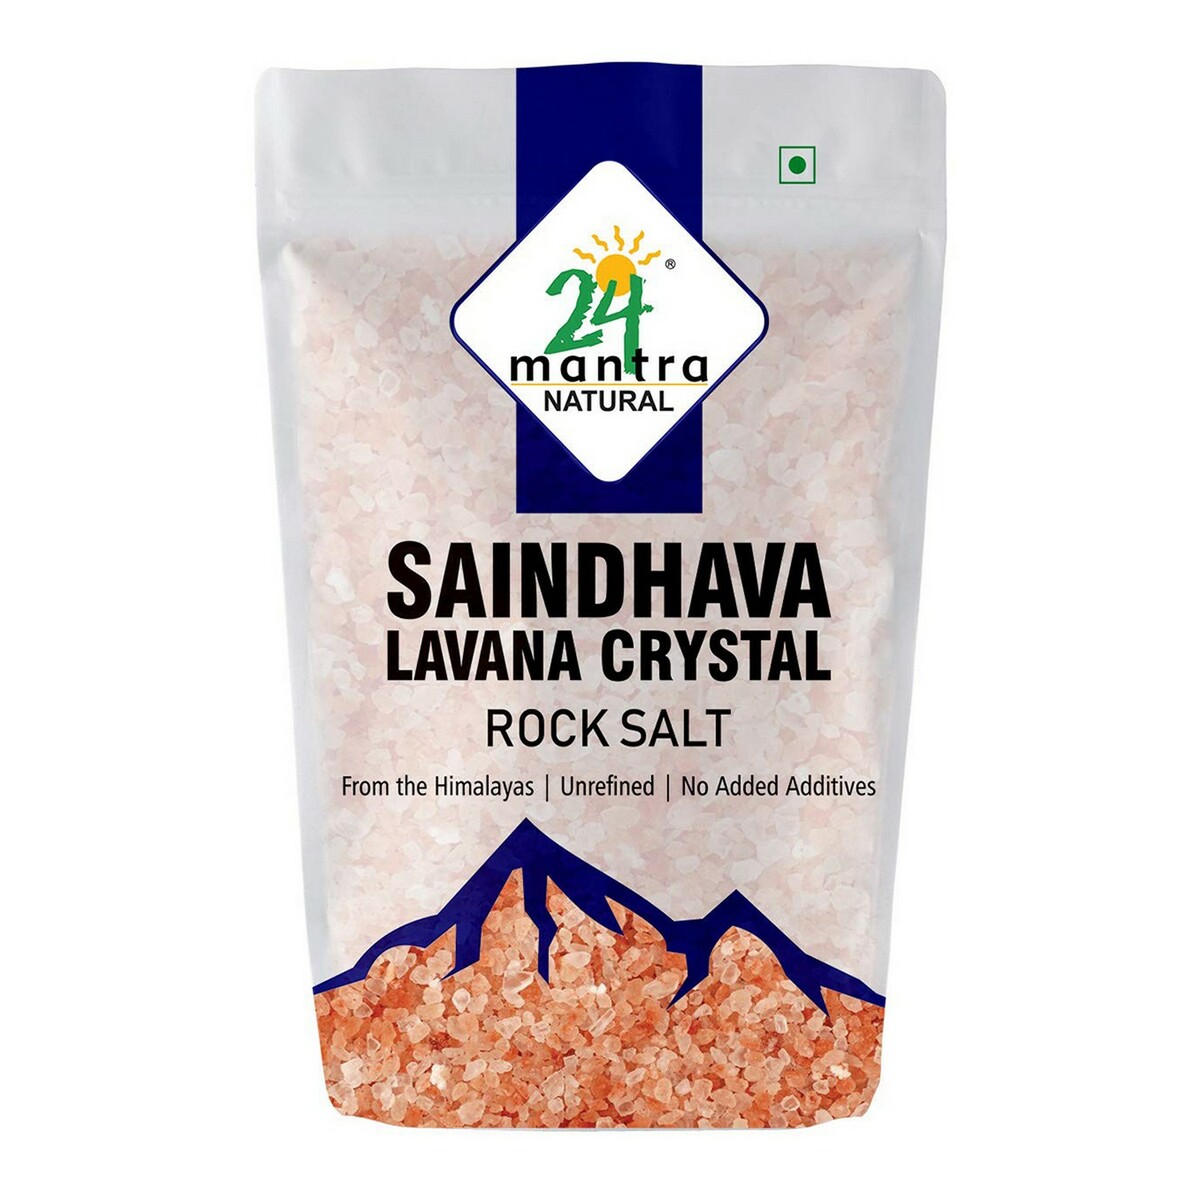 24 Mantra Rock Salt Crystals 1kg